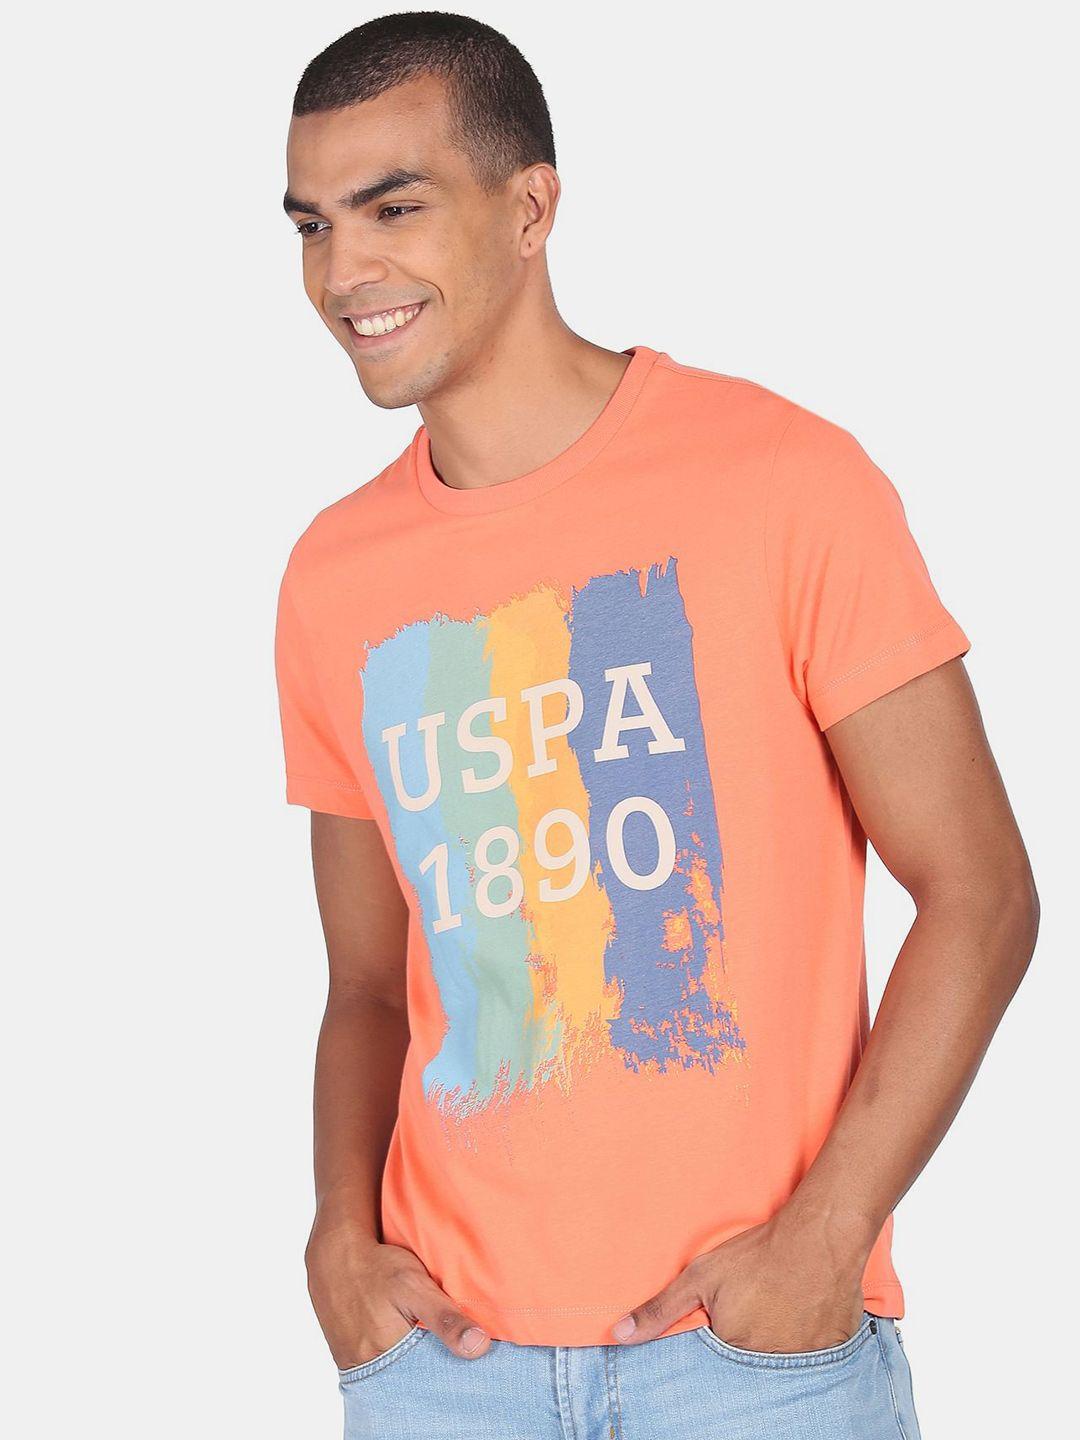 u.s. polo assn. denim co.men orange applique t-shirt 100% cotton